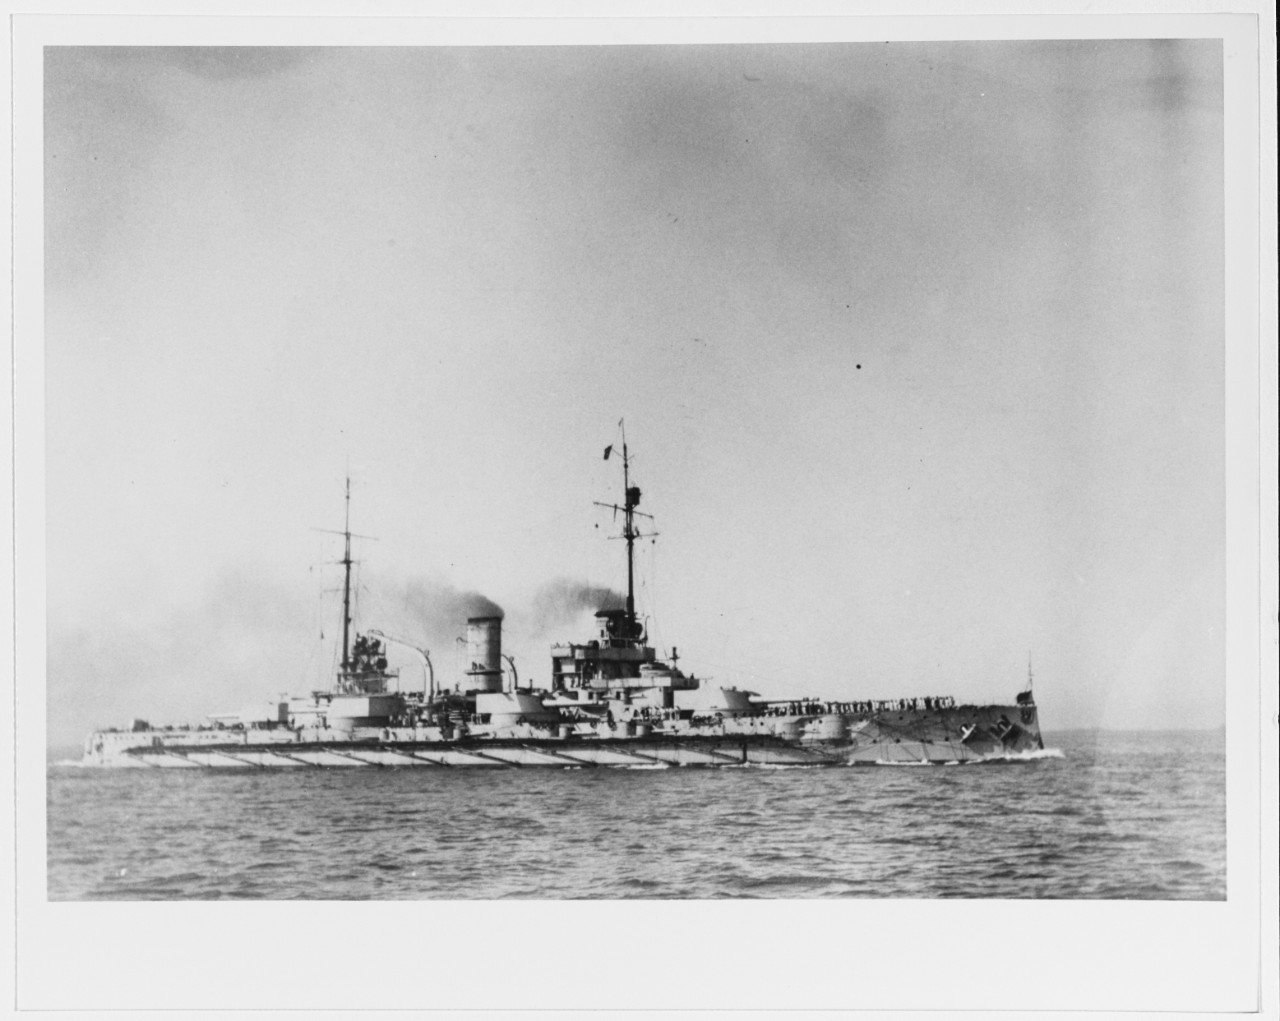 POSEN (German battleship, 1908-1922)